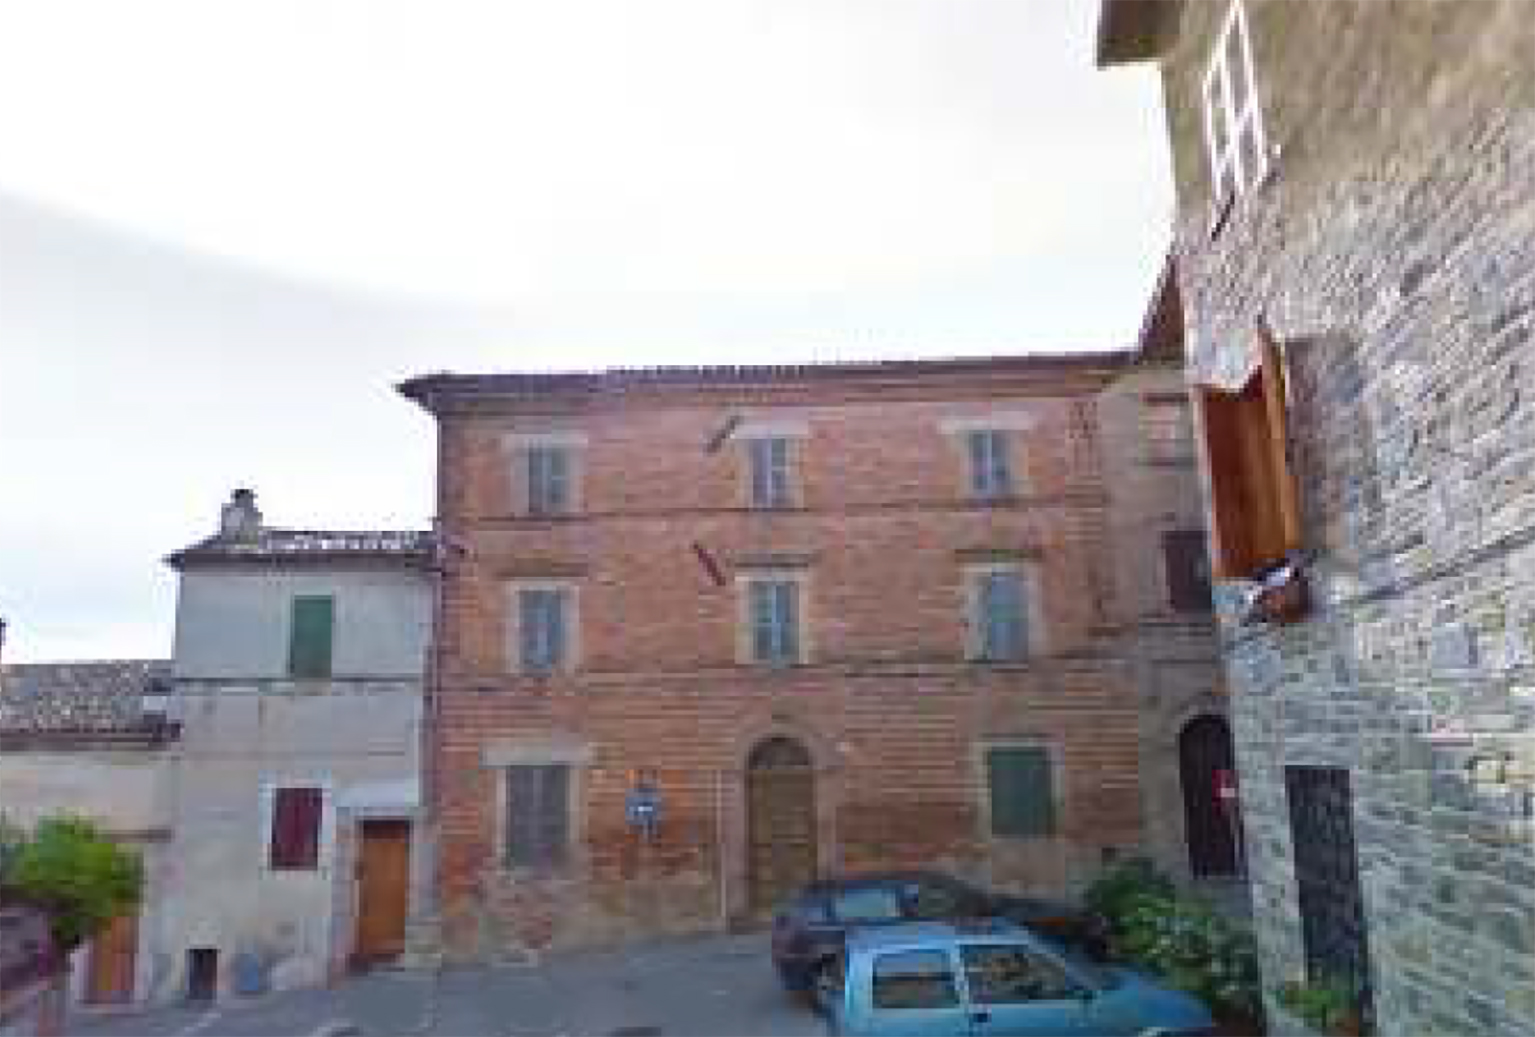 Palazzo signorile (palazzo, signorile) - Belforte del Chienti (MC) 